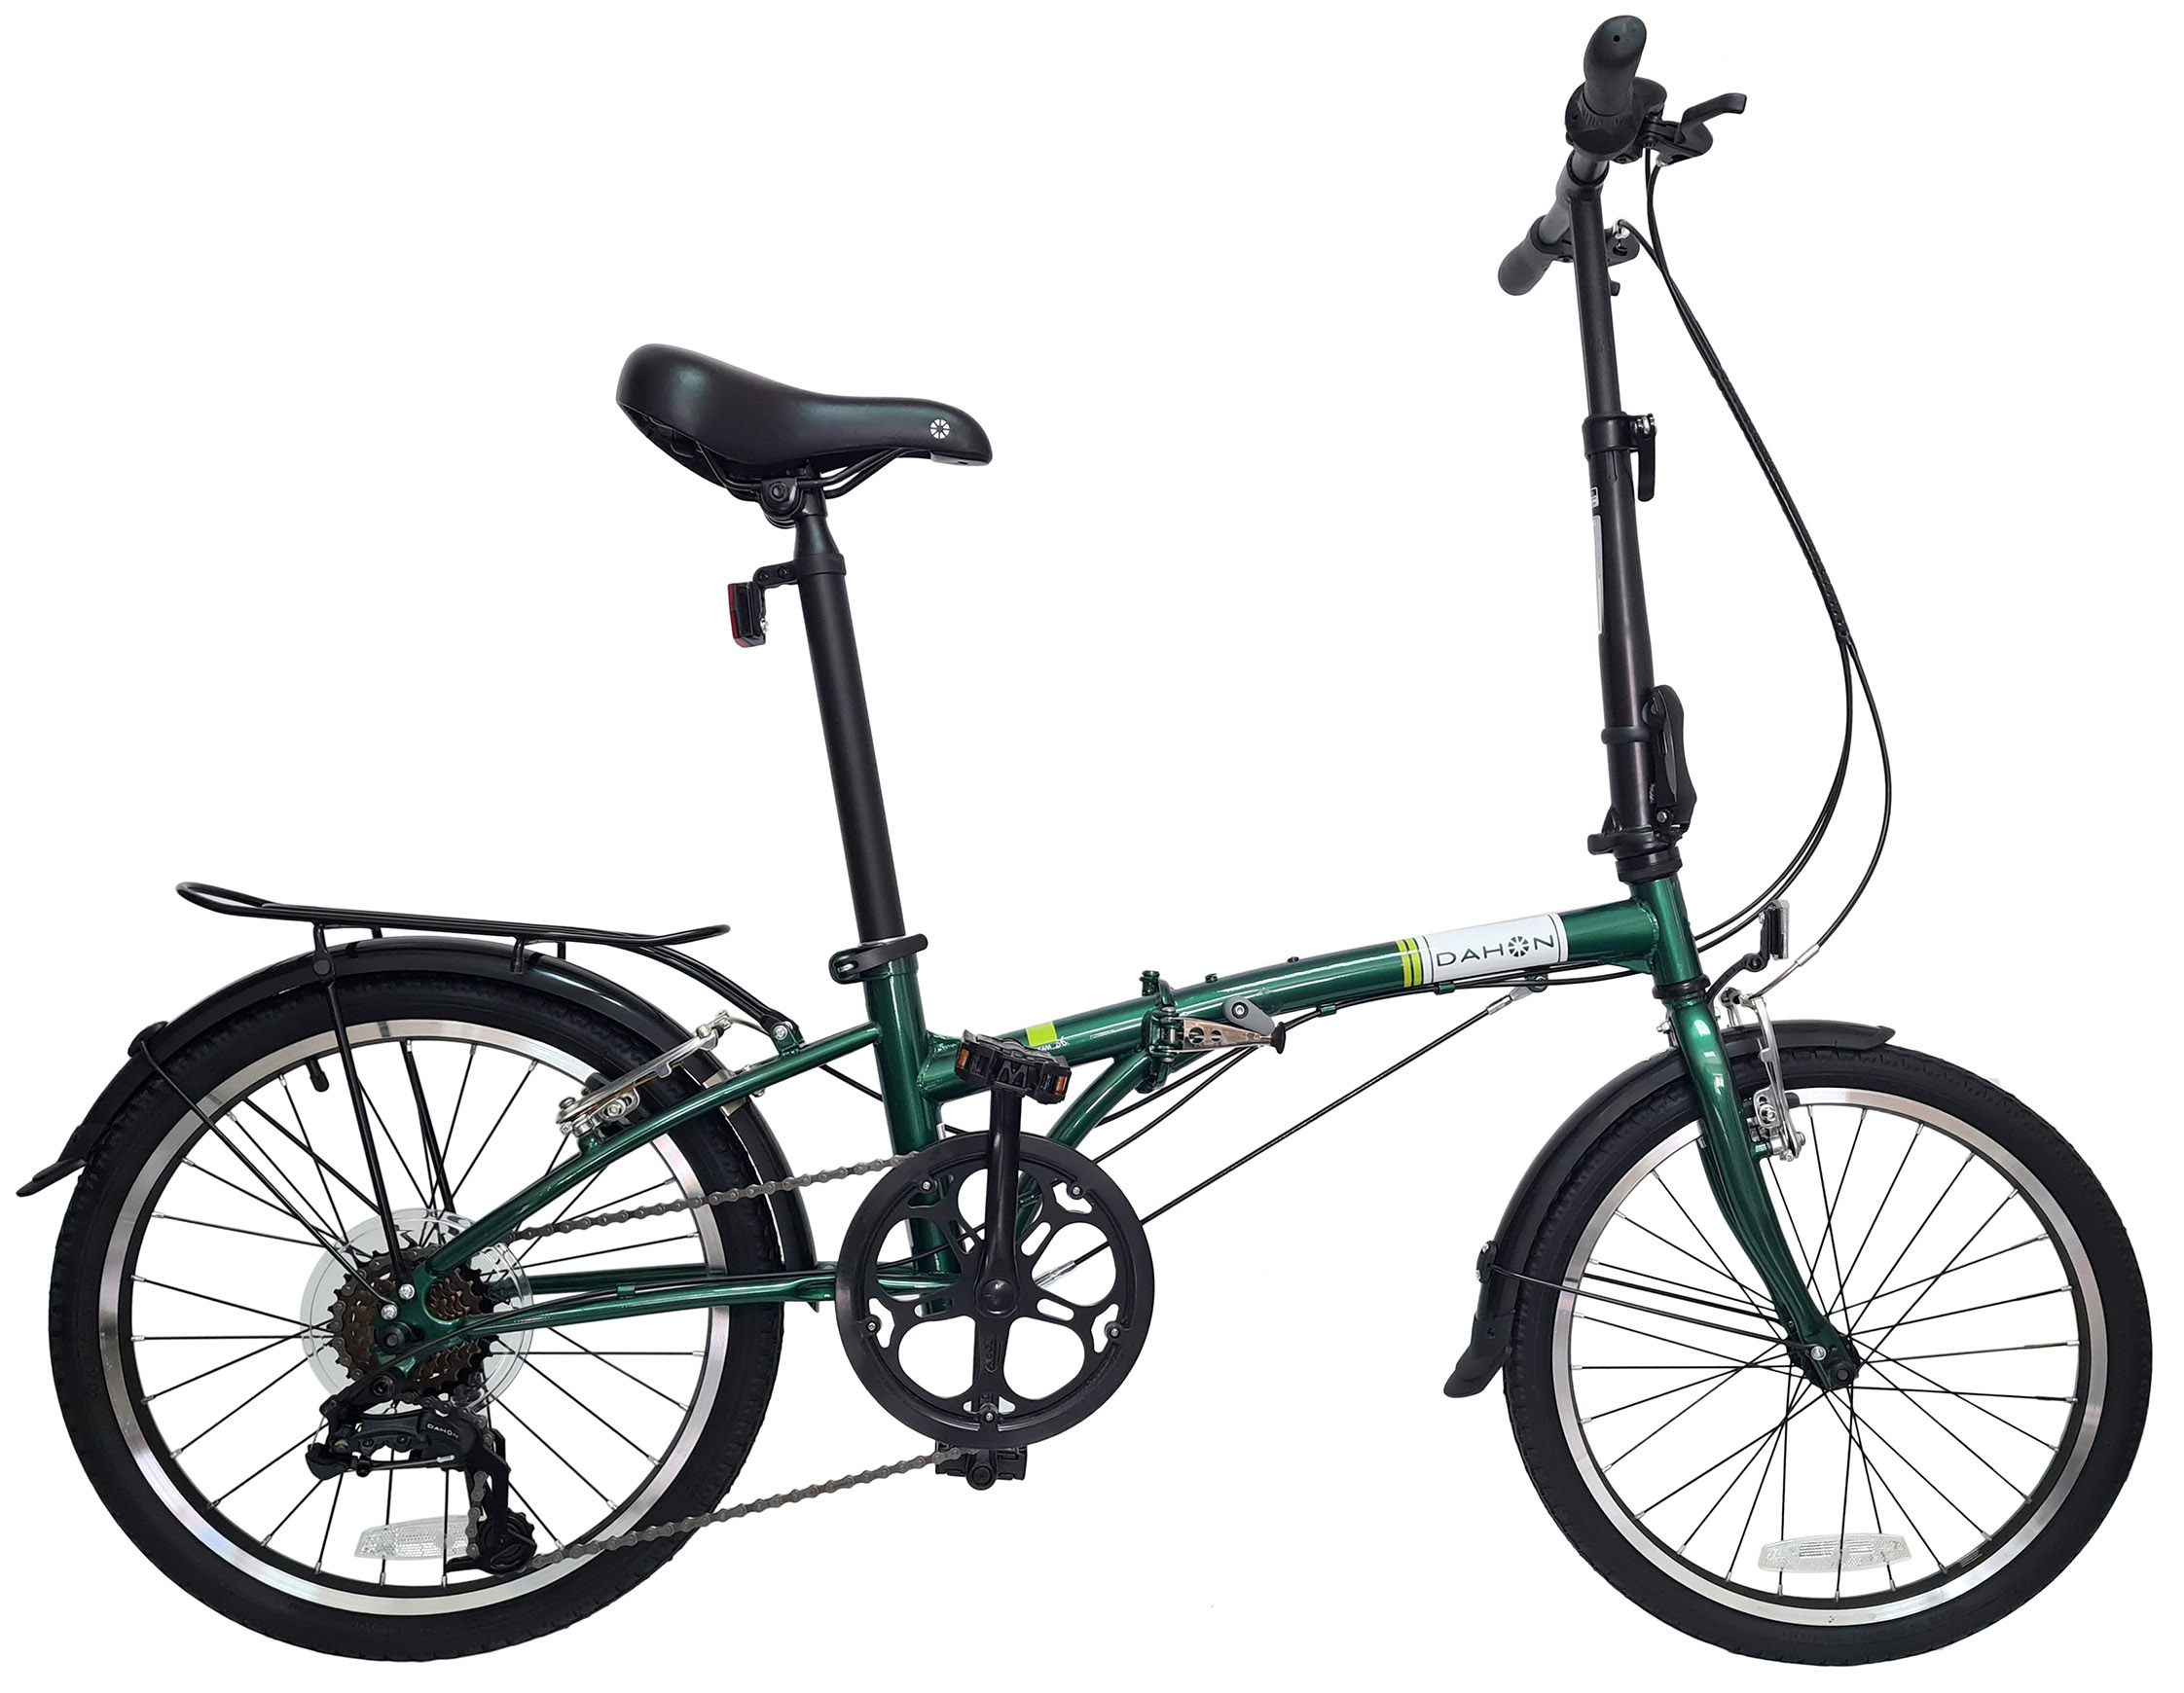  Отзывы о Складном велосипеде Dahon Dream D6 (2021) 2021